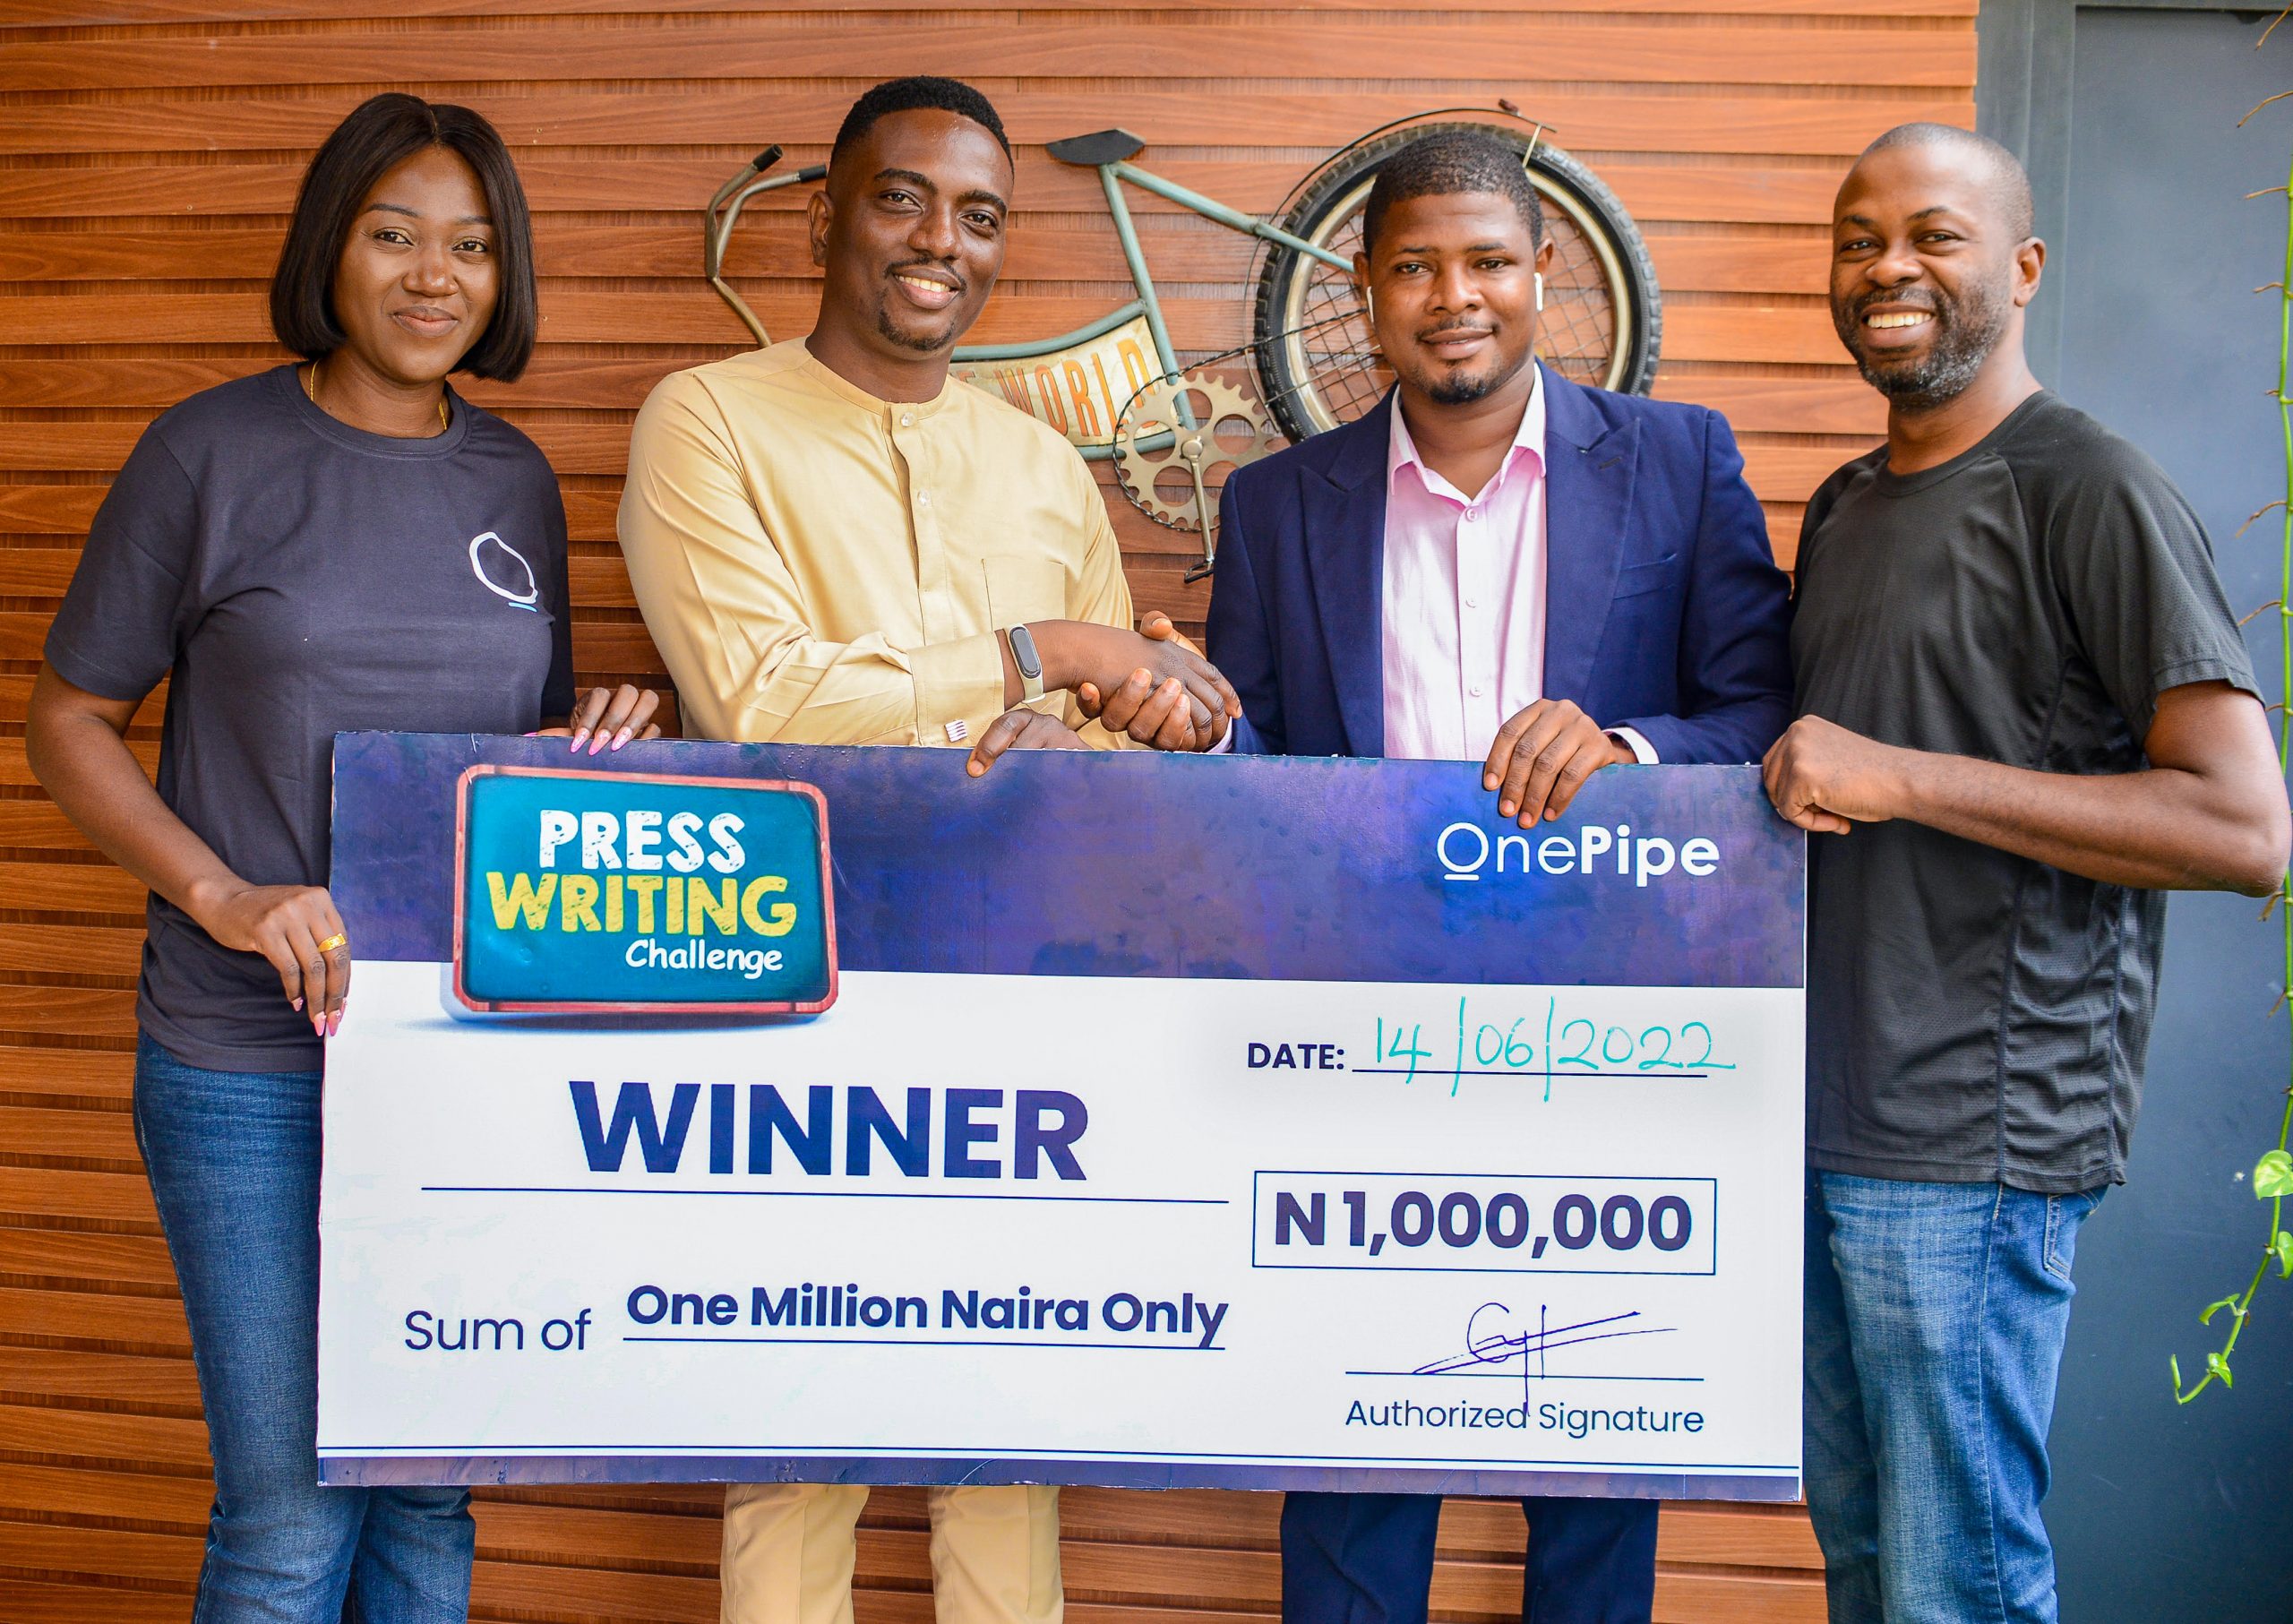 Business Metrics’ Omobayo Azeez, 2 Others Emerge Winners of OnePipe Writing Challenge